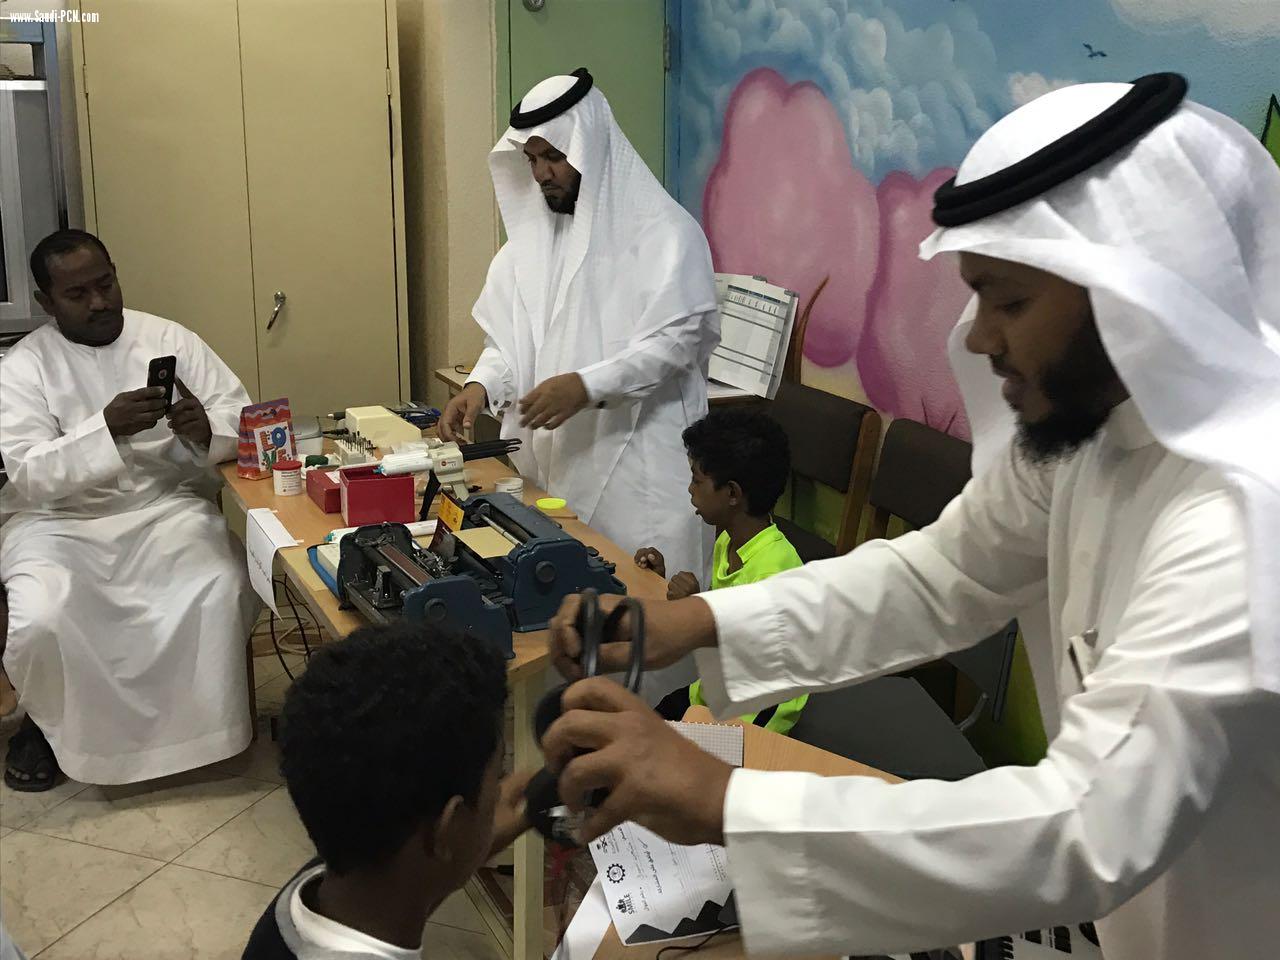 مركز الأمير محمد بن ناصر للخدمات المساندة يقدم خدمات متكاملة لذوي الاحتياجات الخاصة